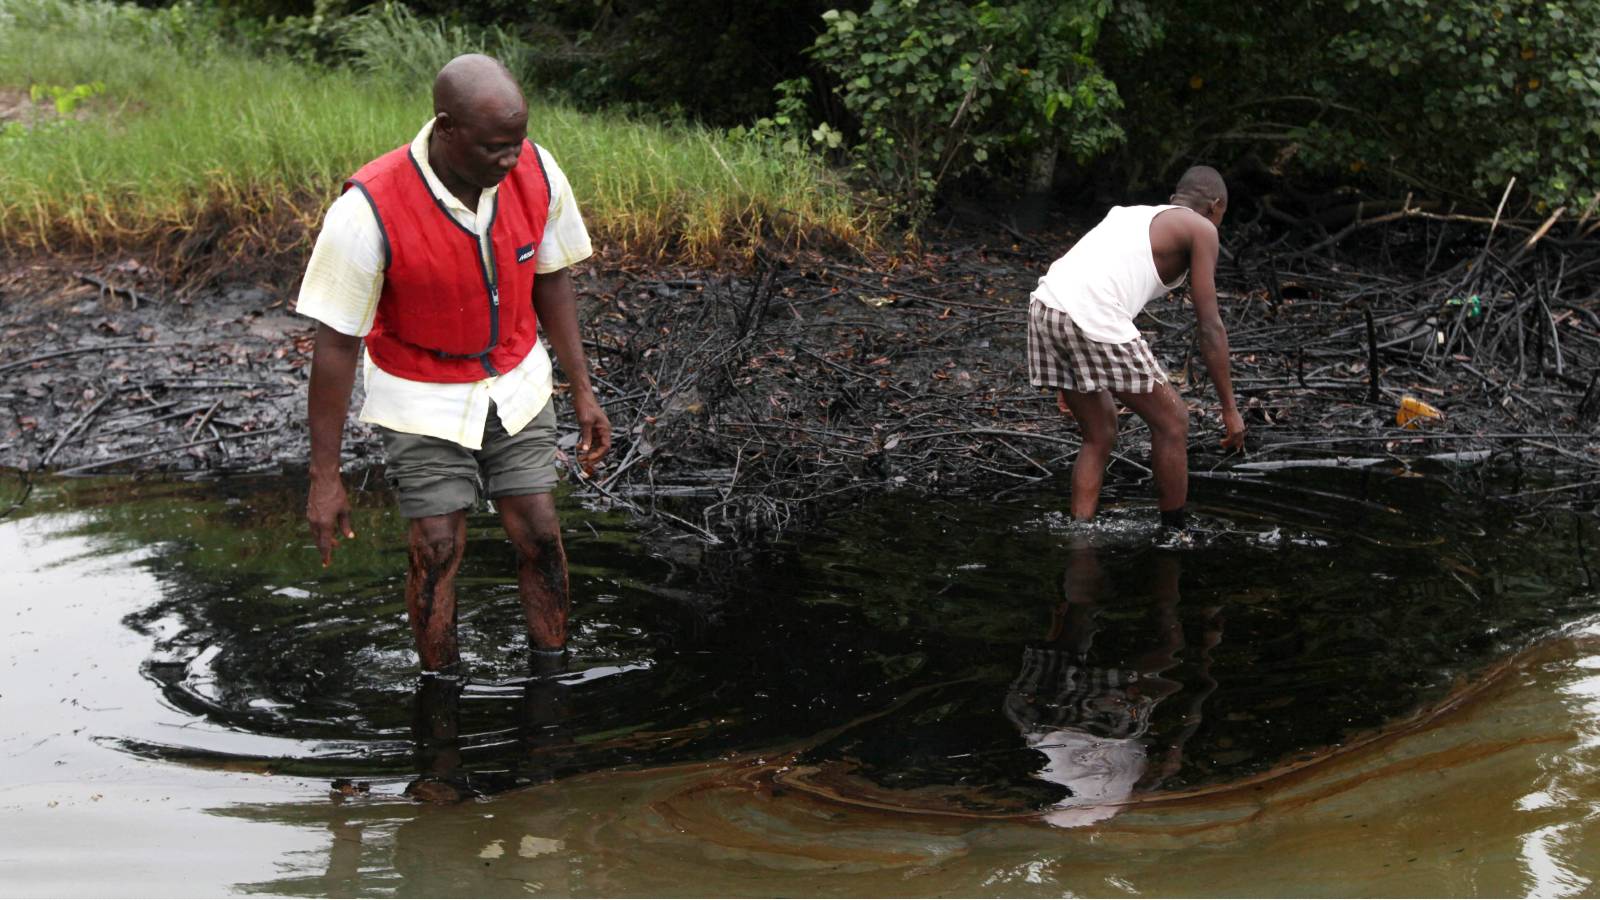 oil slick in Niger Delta region